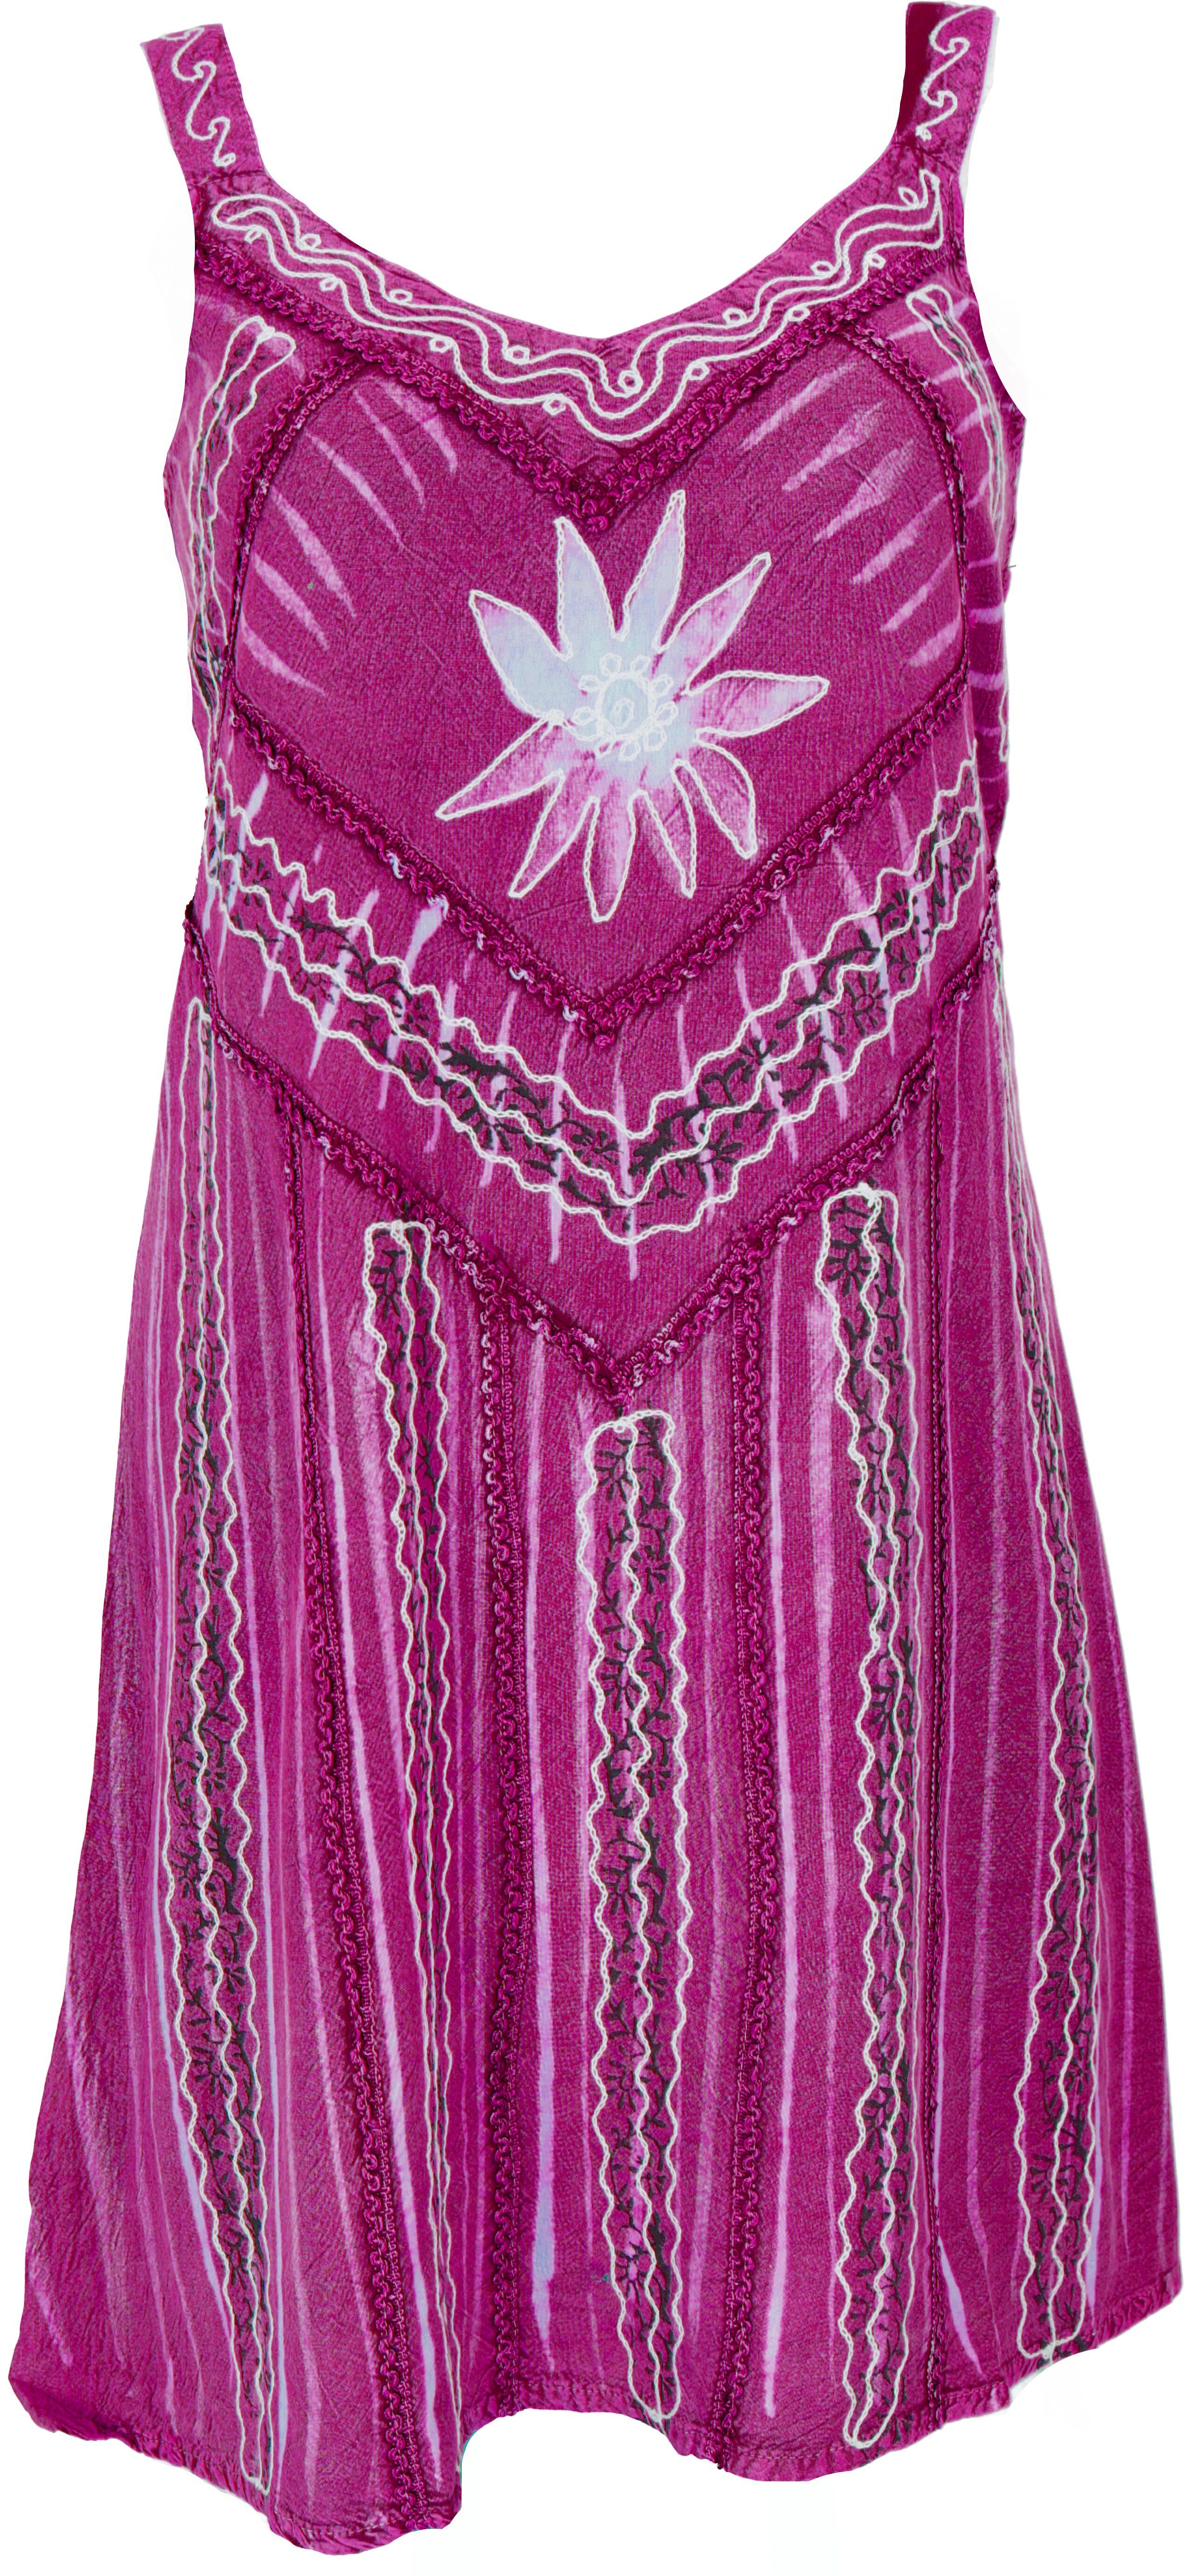 Boho Minikleid 6 Guru-Shop alternative indisches chic,.. pink Midikleid Design Besticktes Bekleidung